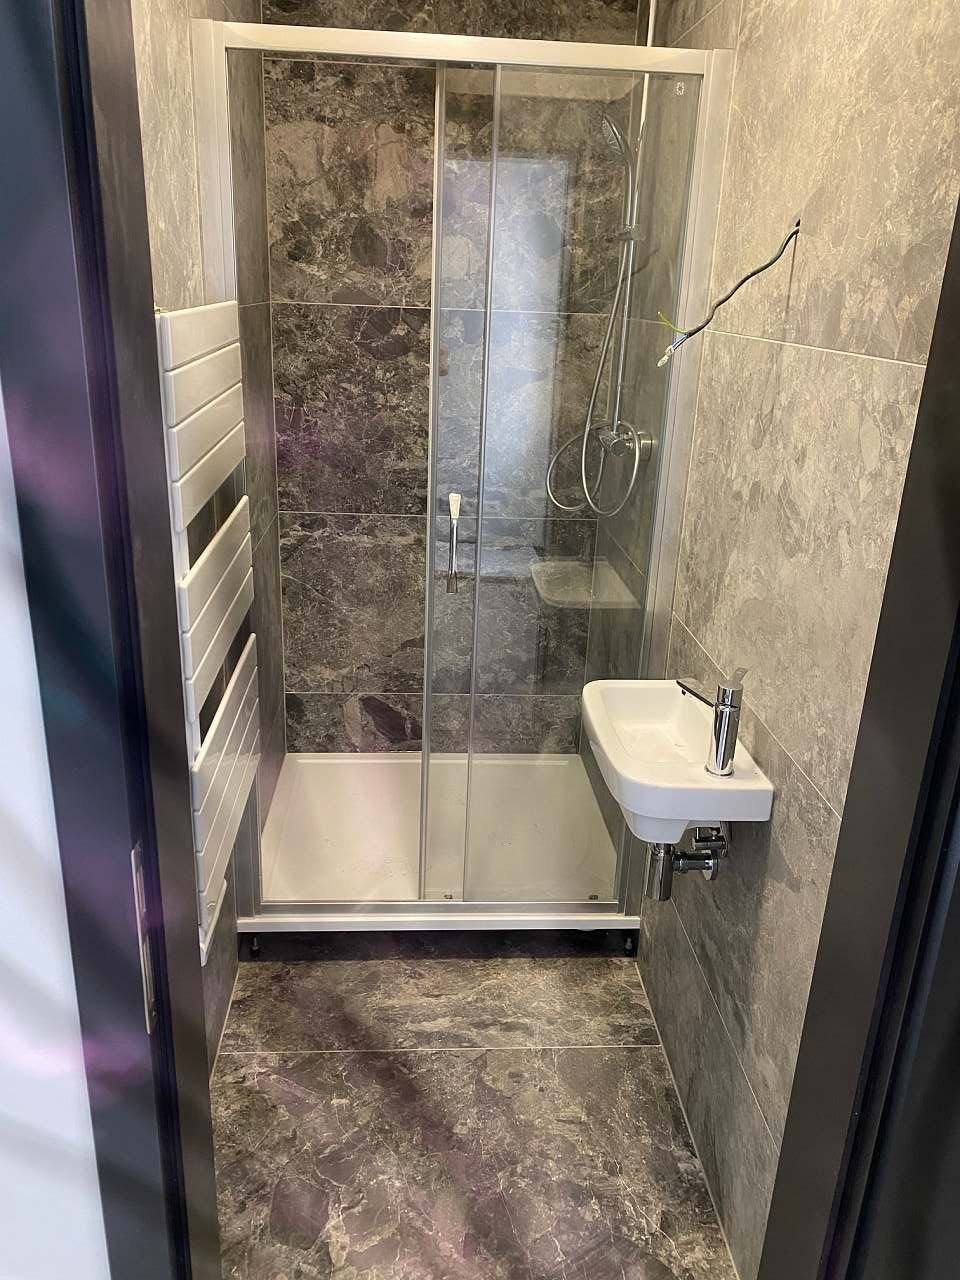 Samostatný sprchový kout k dvoulůžkové ložnici přízemí